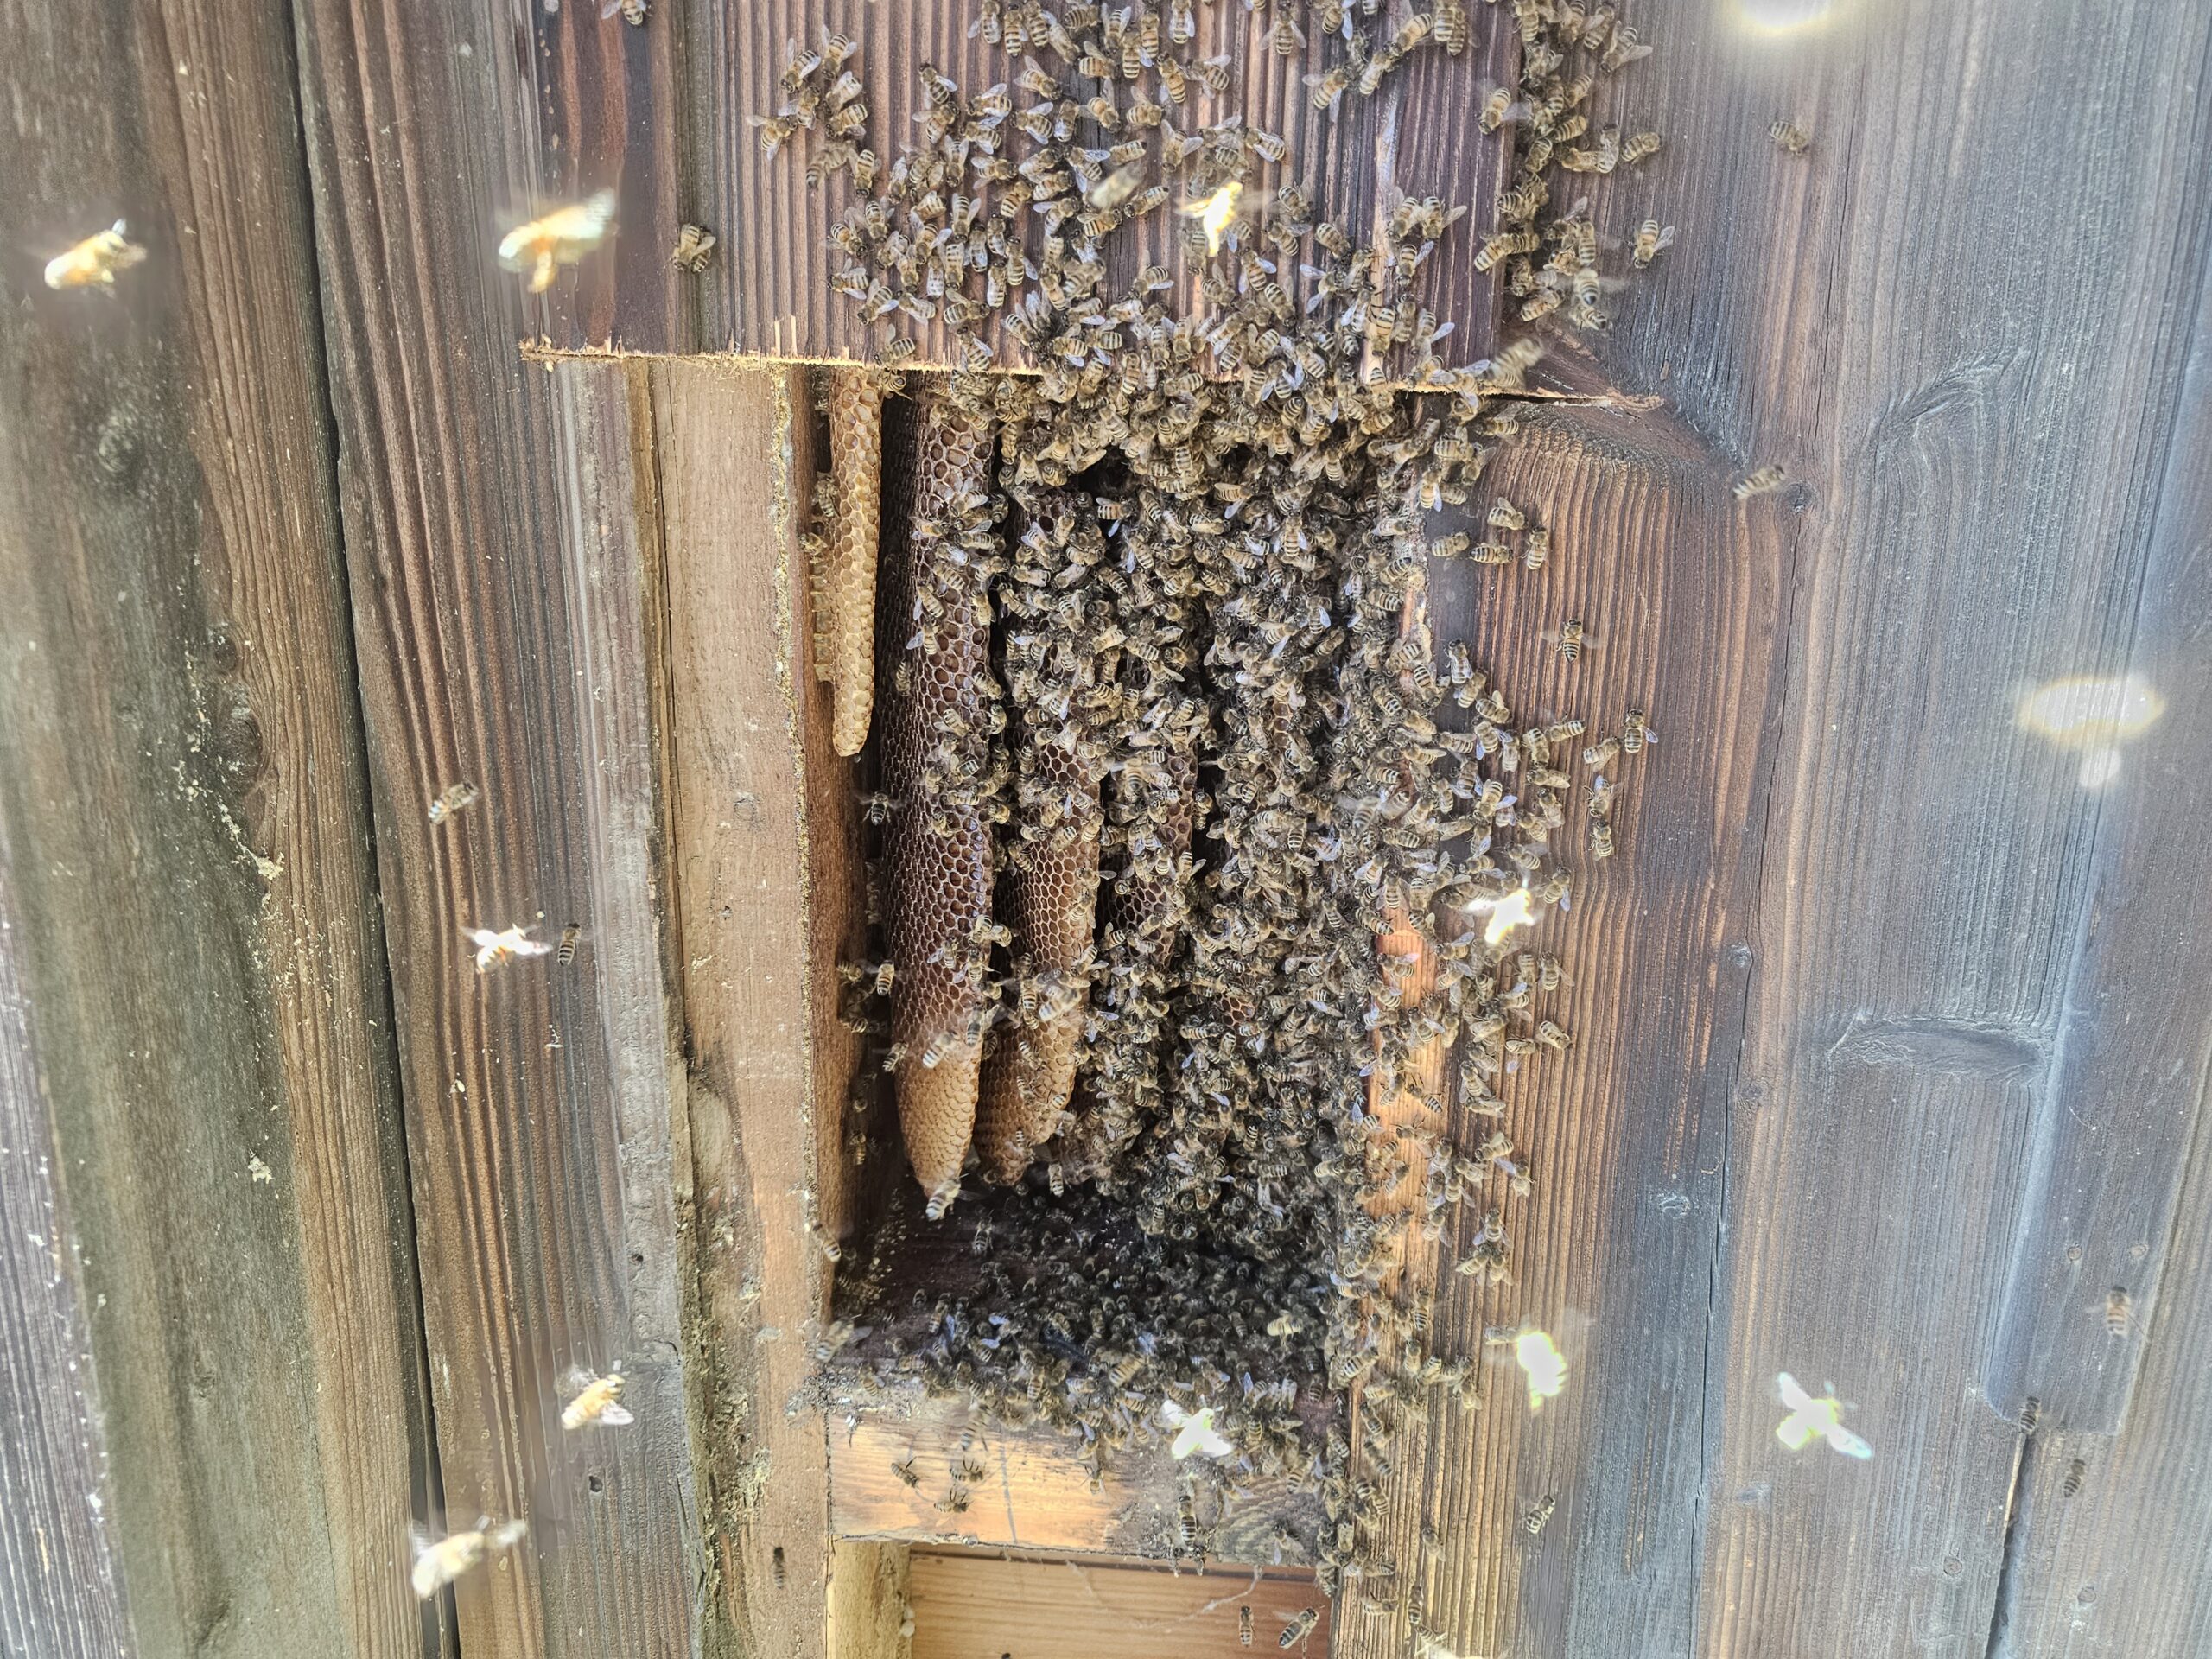 Bienenschwarm, Honigbiene, Honigbienen, Bienenvolk, Umsiedlung, einsatz, Tierrettung